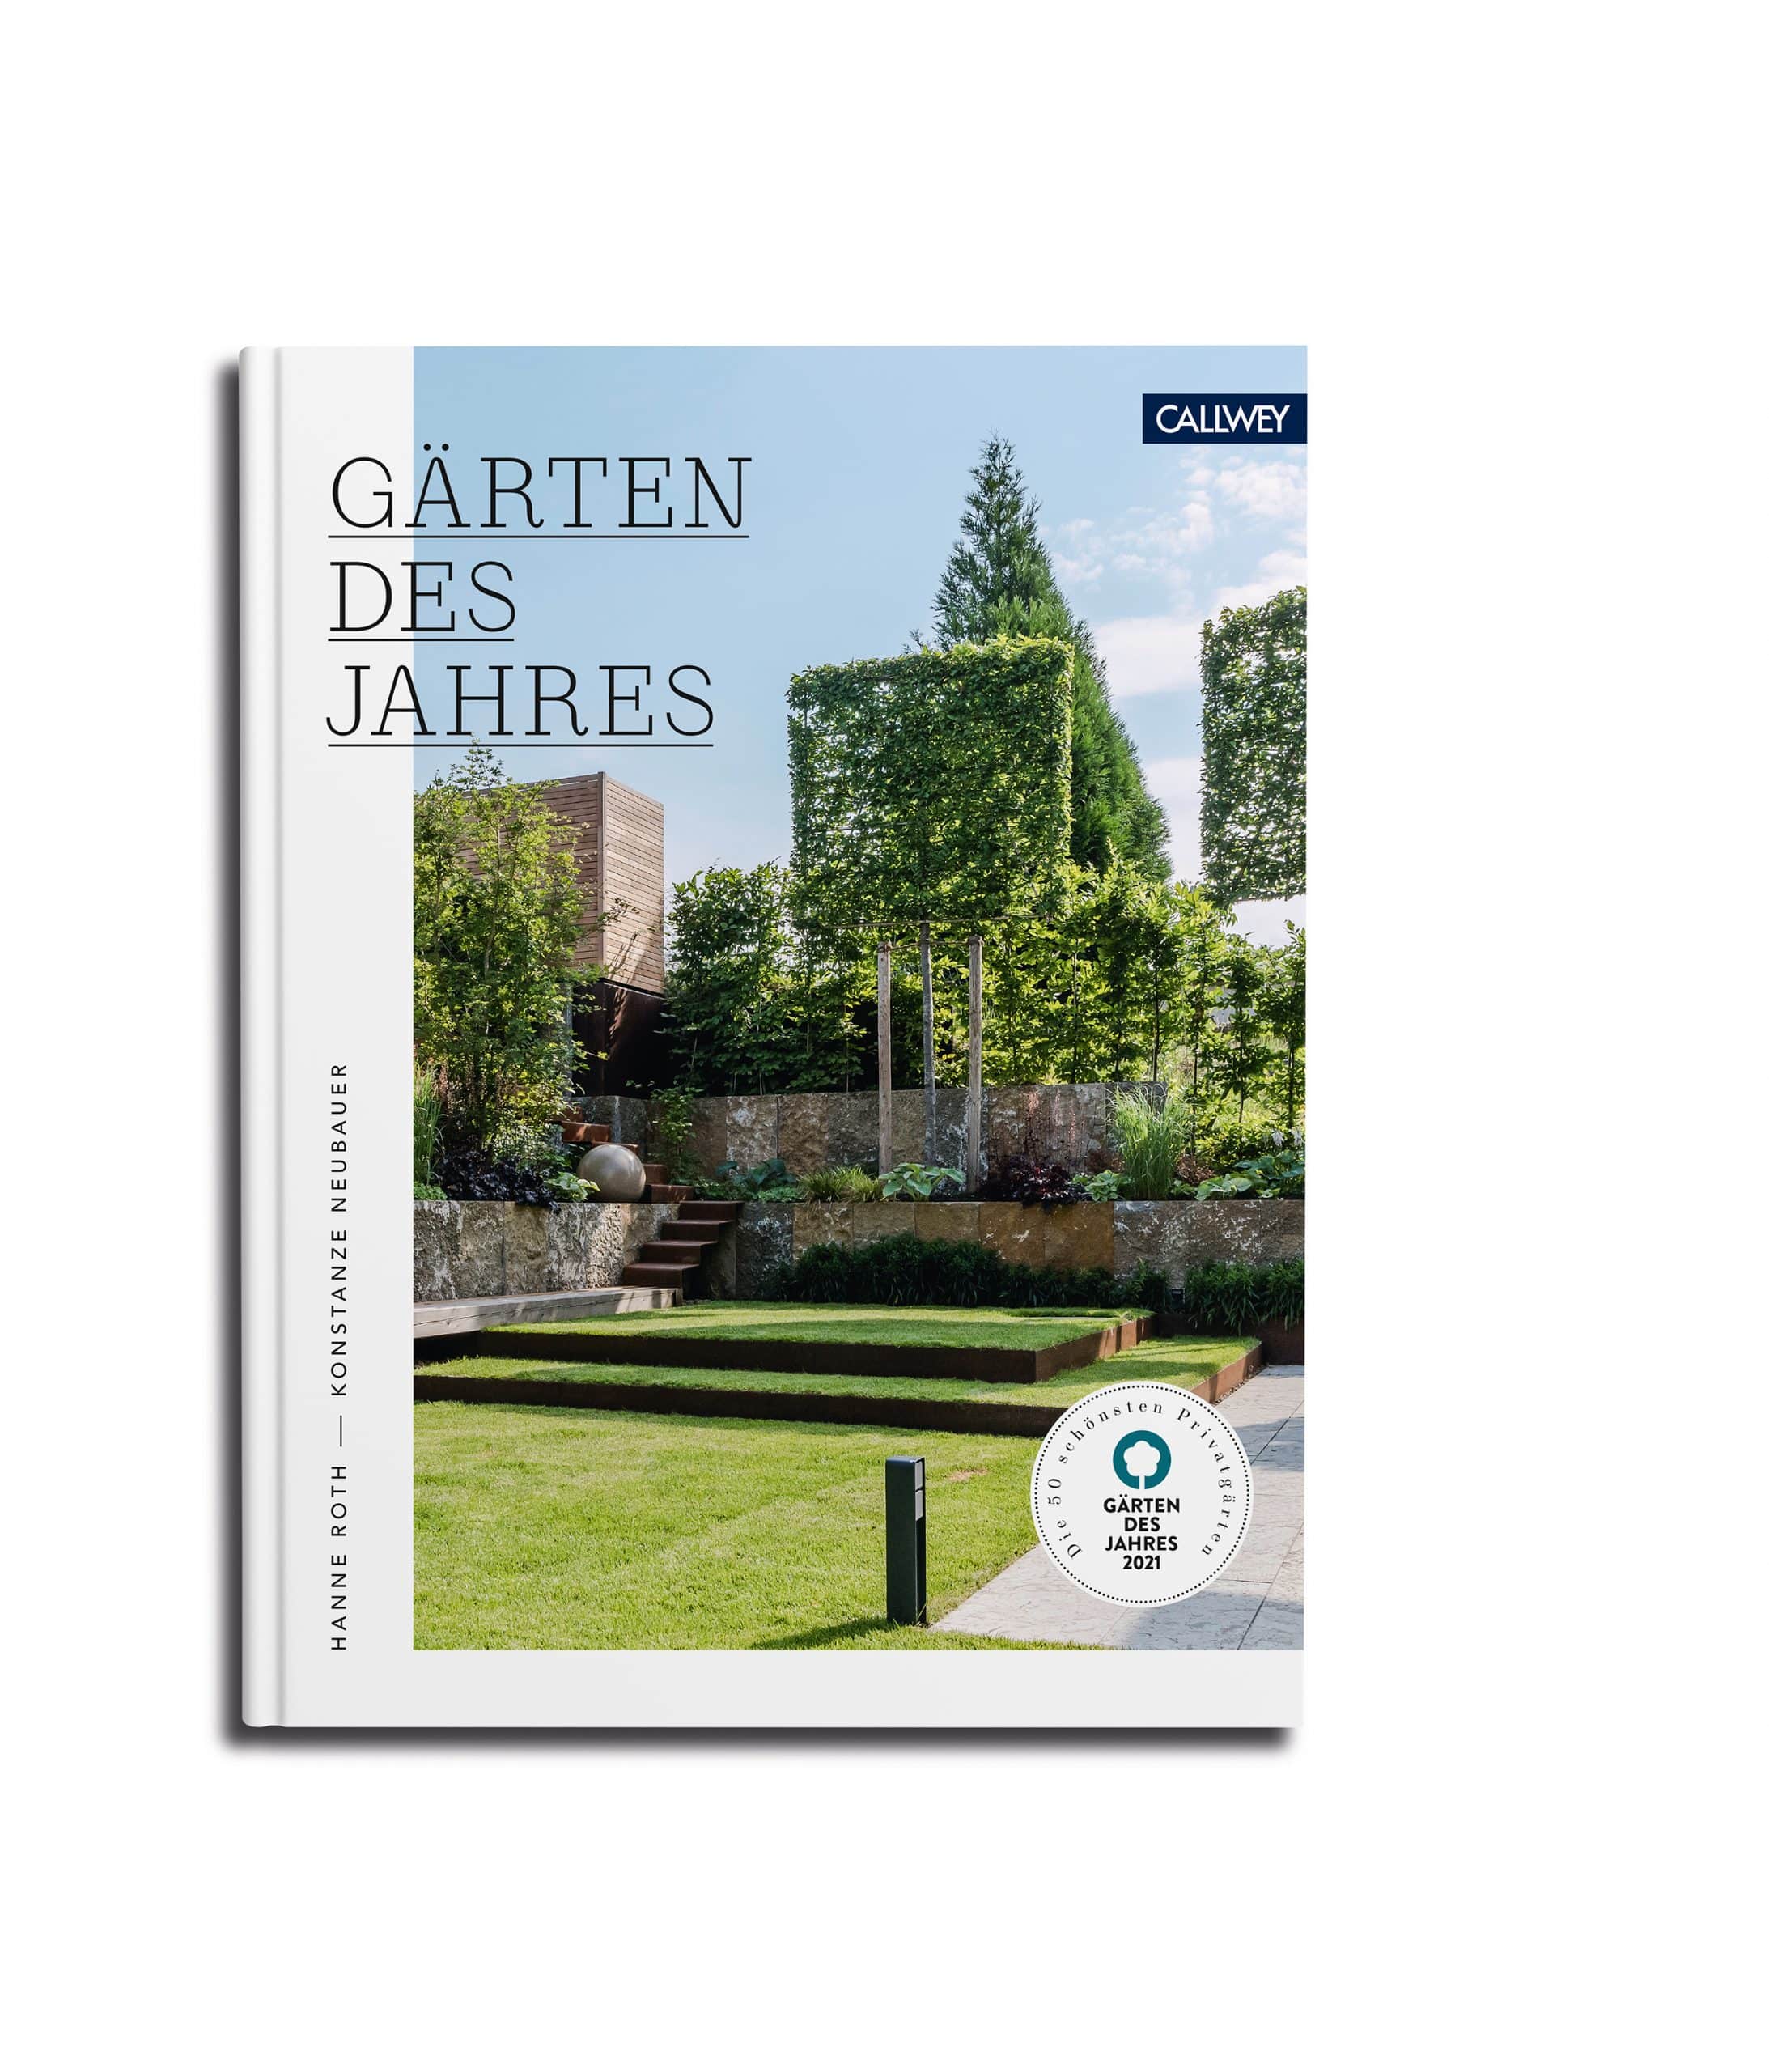 Gärten des Jahres 2021. Hanne Roth und Konstanze Neubauer (Hrsg.) (Callwey Verlag)